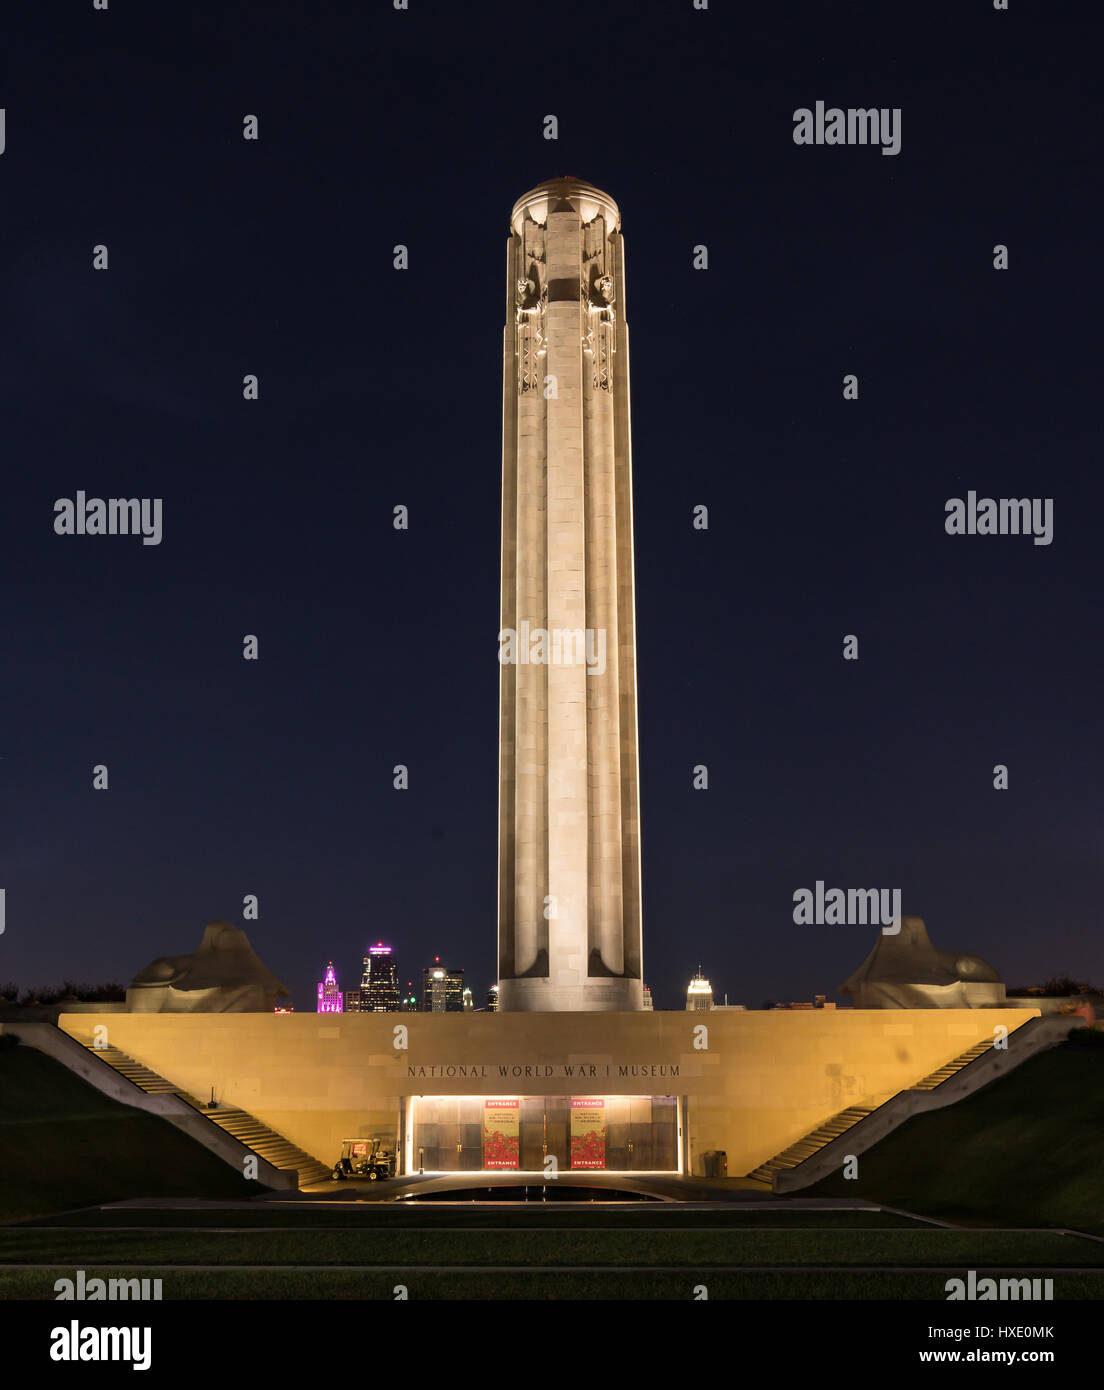 KANSAS CITY, MO - 8. Oktober: Denkmal im ersten Weltkrieg Nationalmuseum in Kansas City, Missouri in der Nacht.  Das 265 Fuß hohen Denkmal errichtet Stockfoto